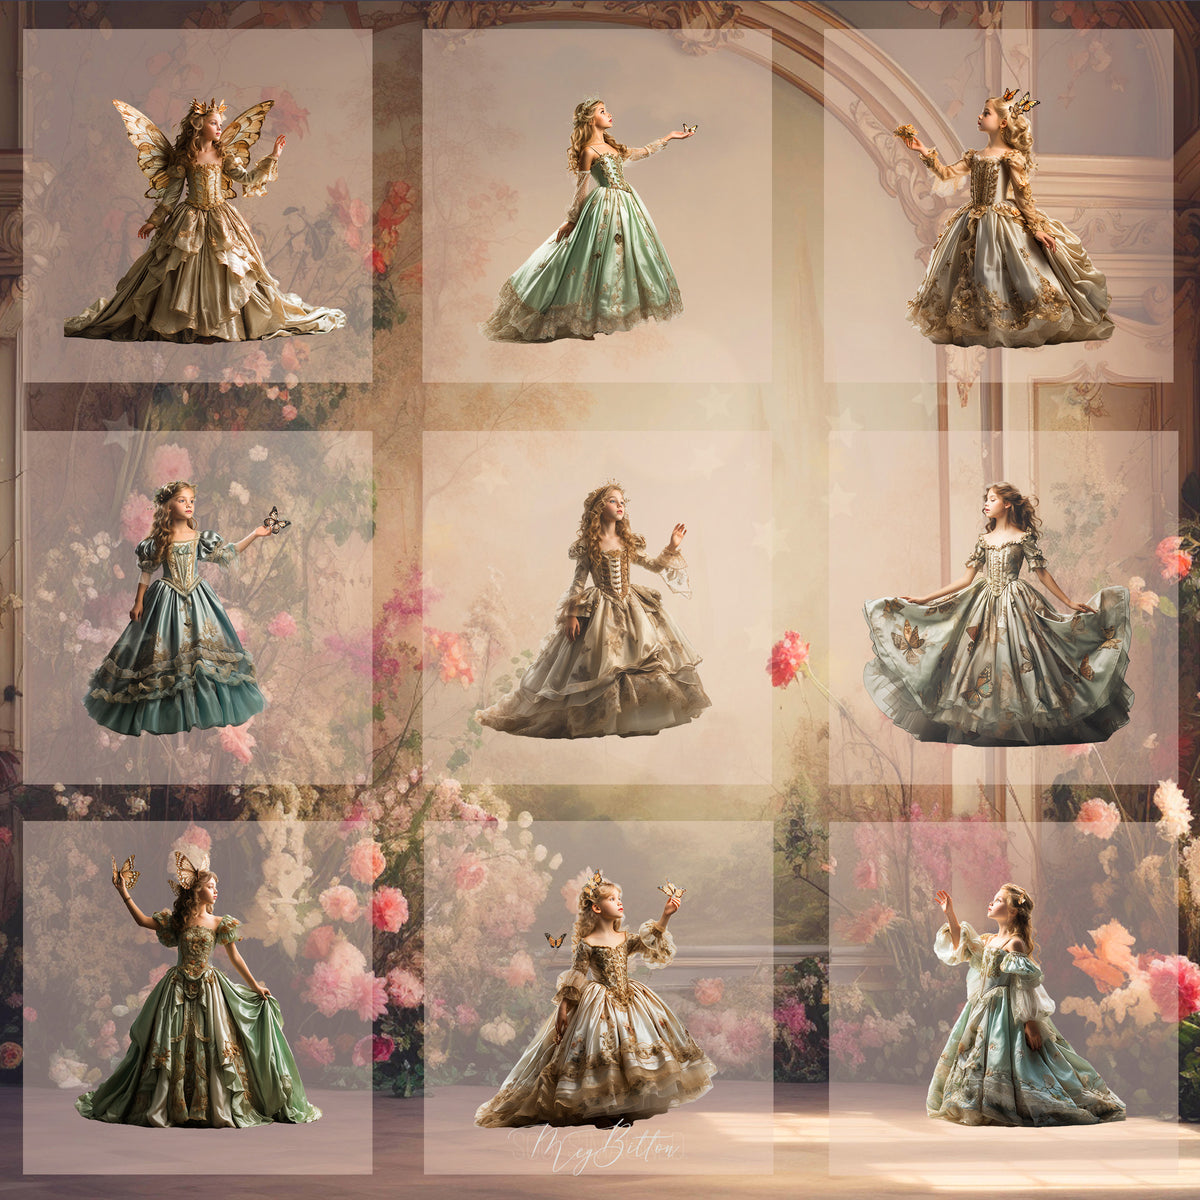 Magical Fairytale Princess Model Overlays